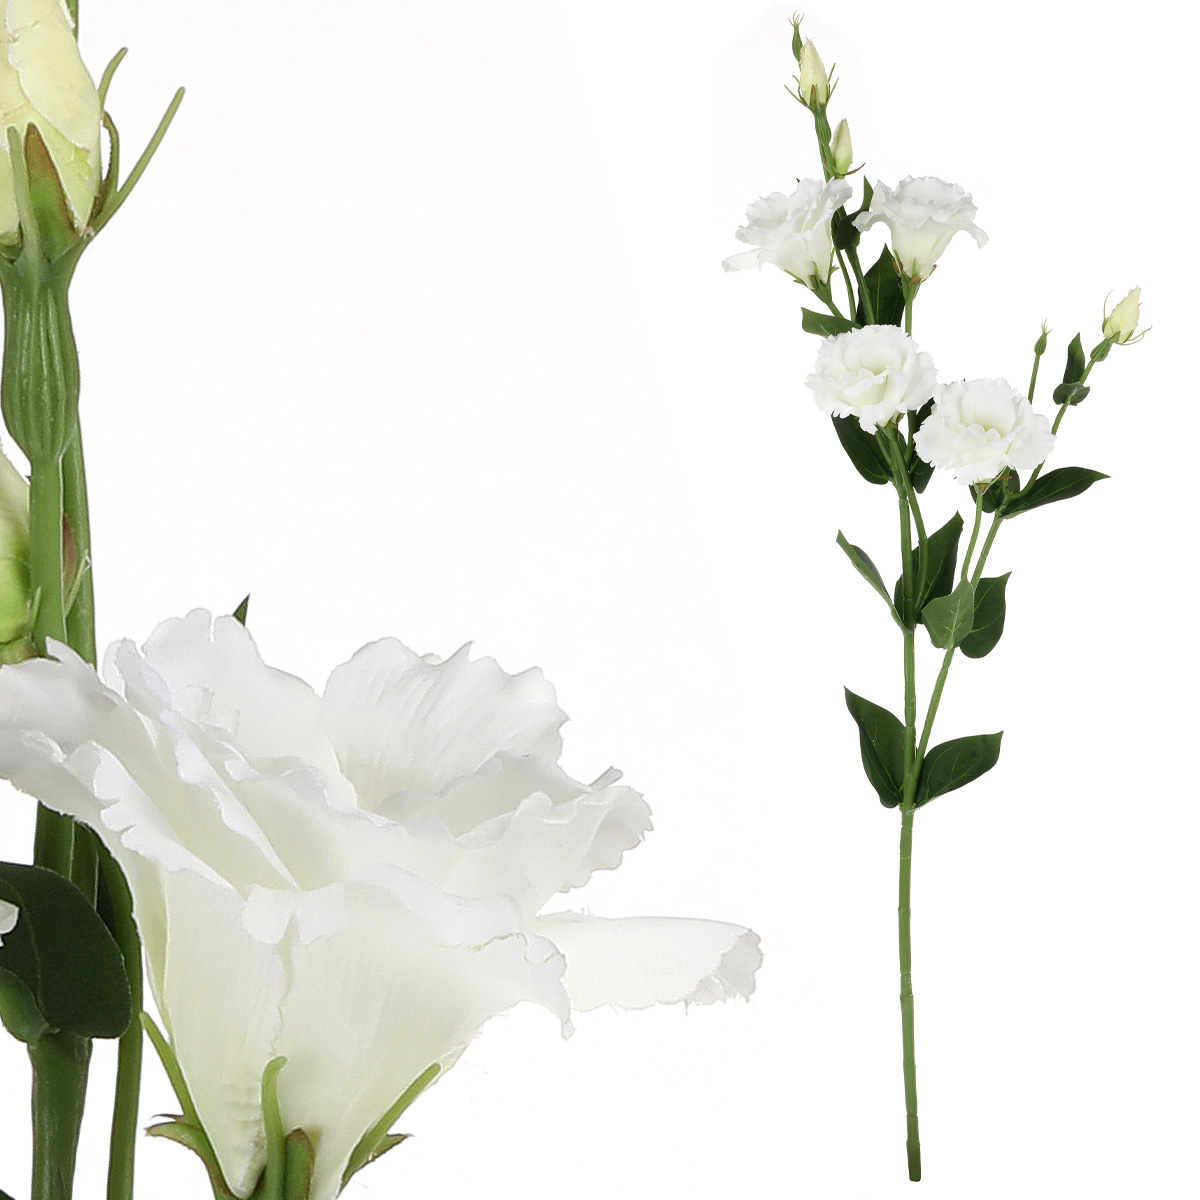 Eustoma - umělá květina, barva bílá.